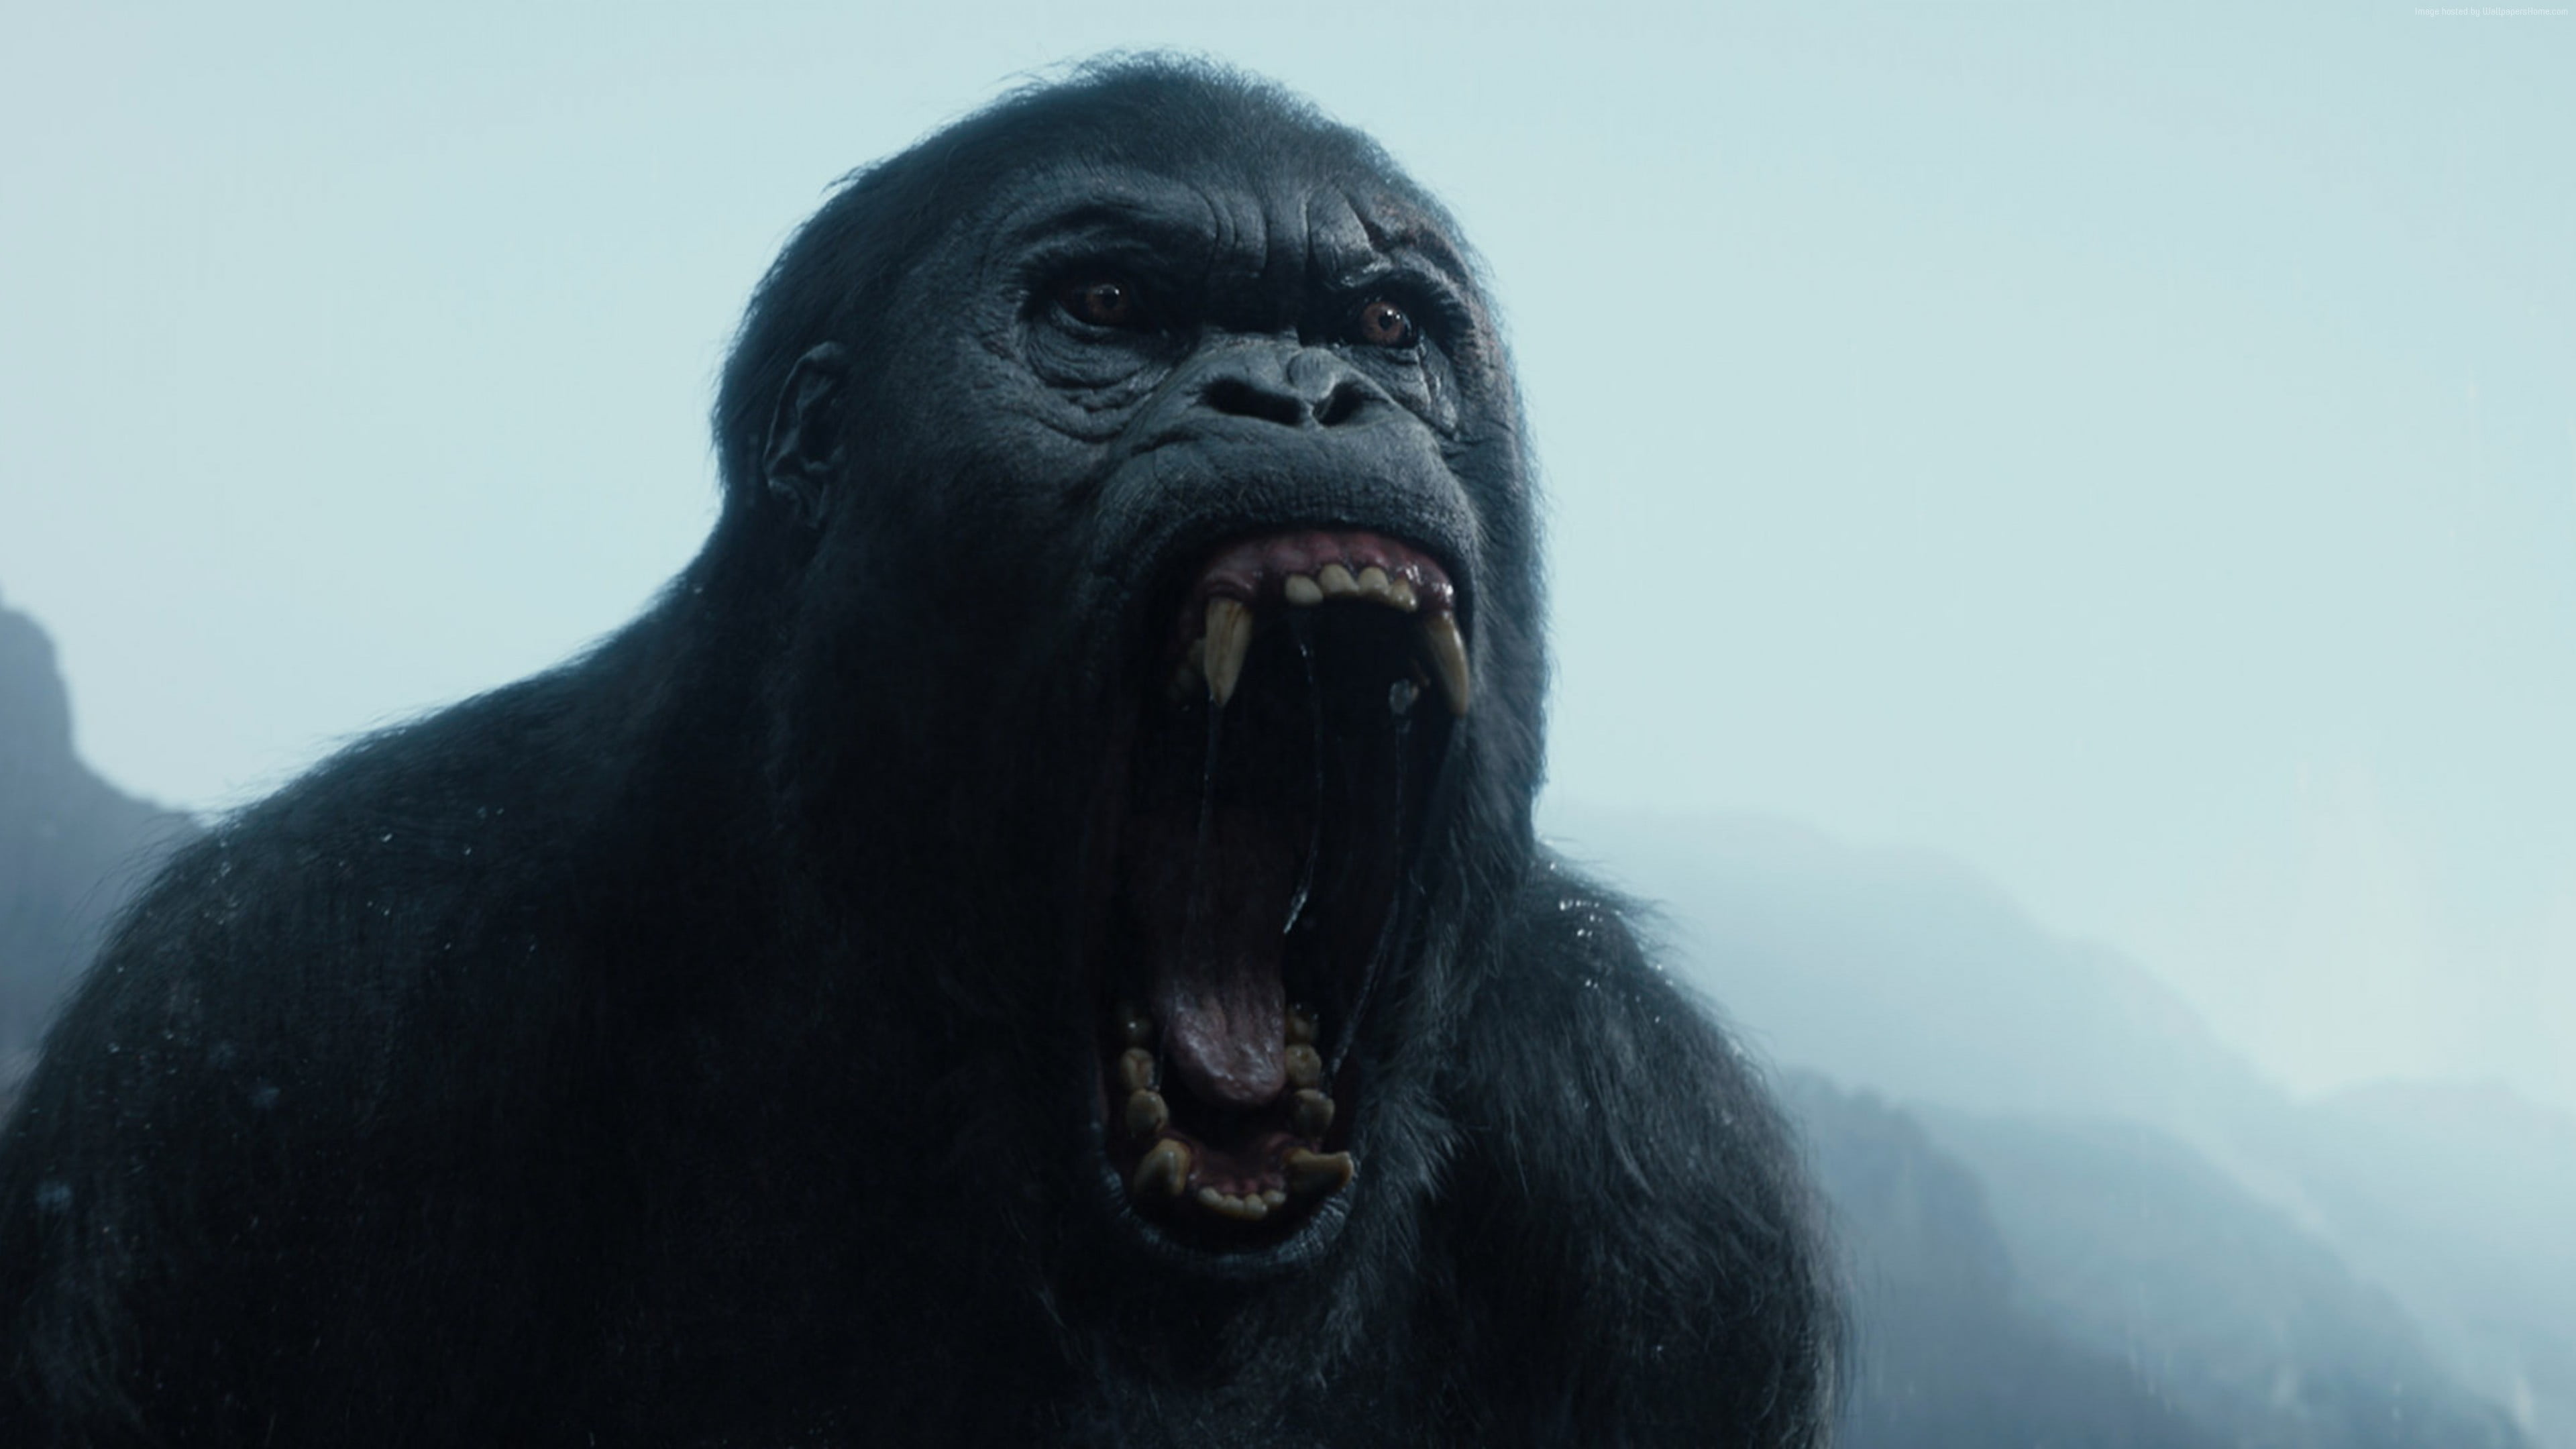 fangs, The, Legend, roar, year, Movie, Film, Tarzan, Gorilla